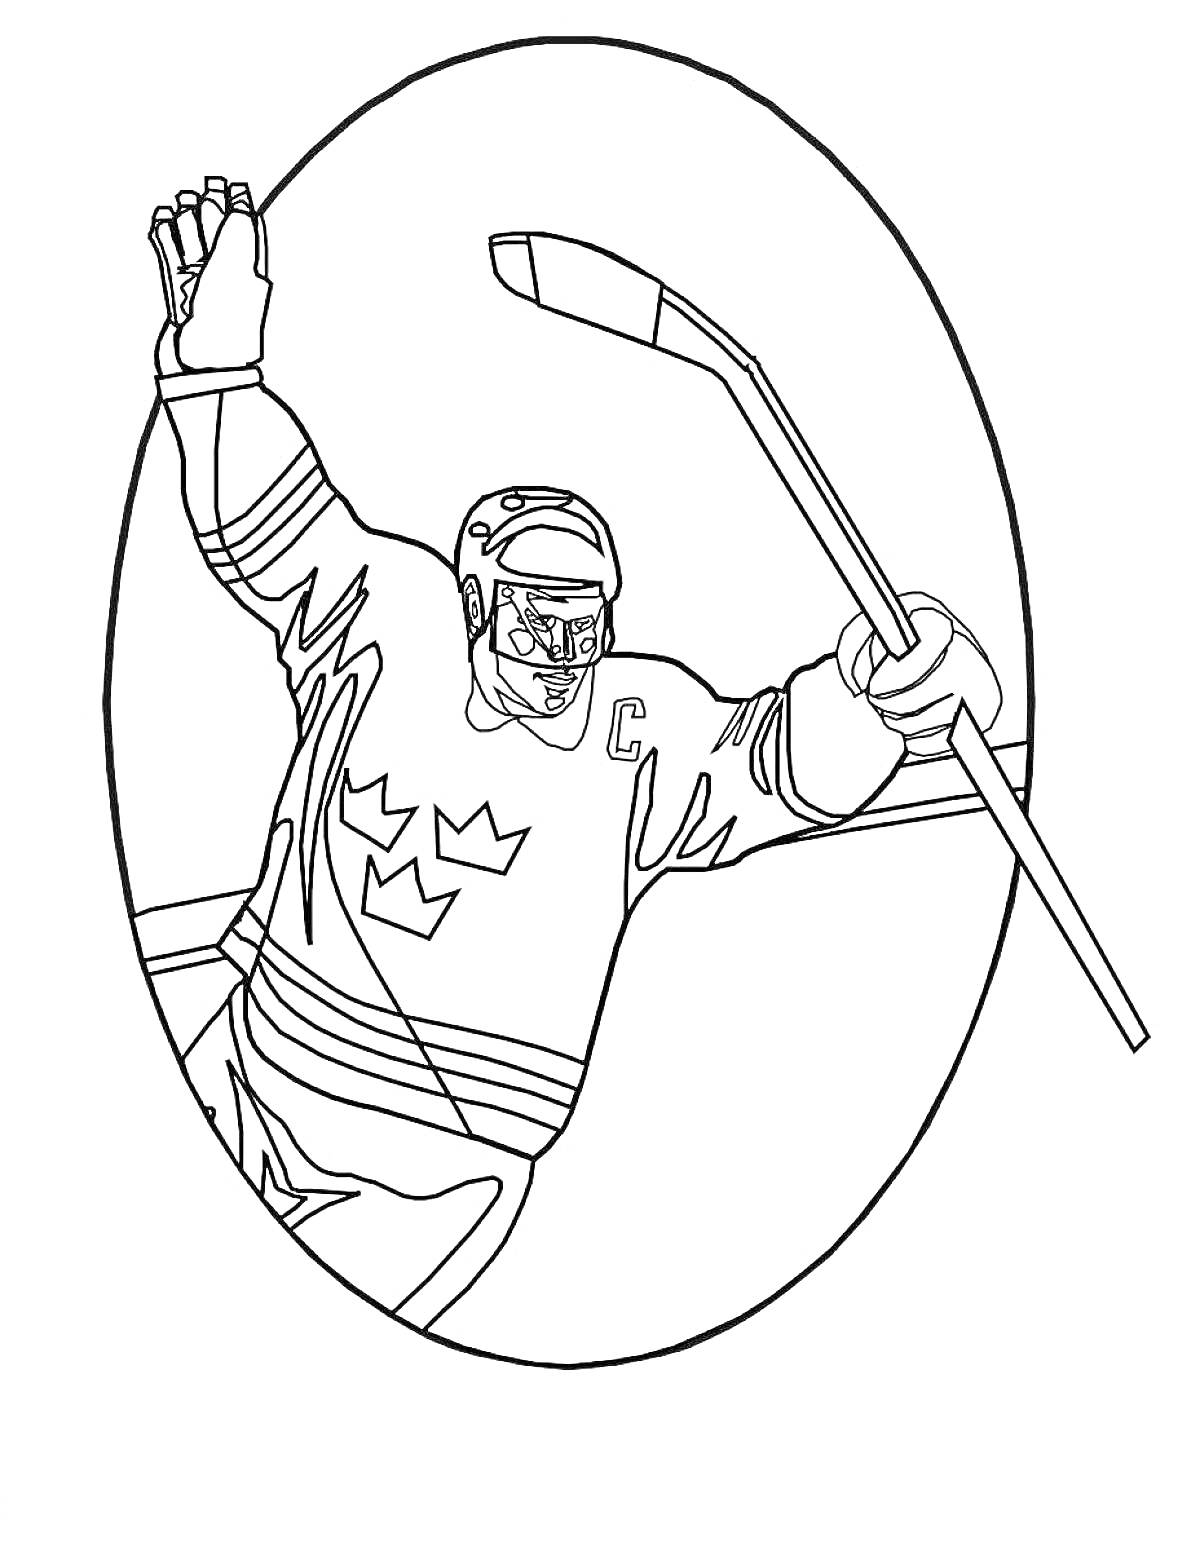 Хоккеист в экипировке с клюшкой и шлемом на льду